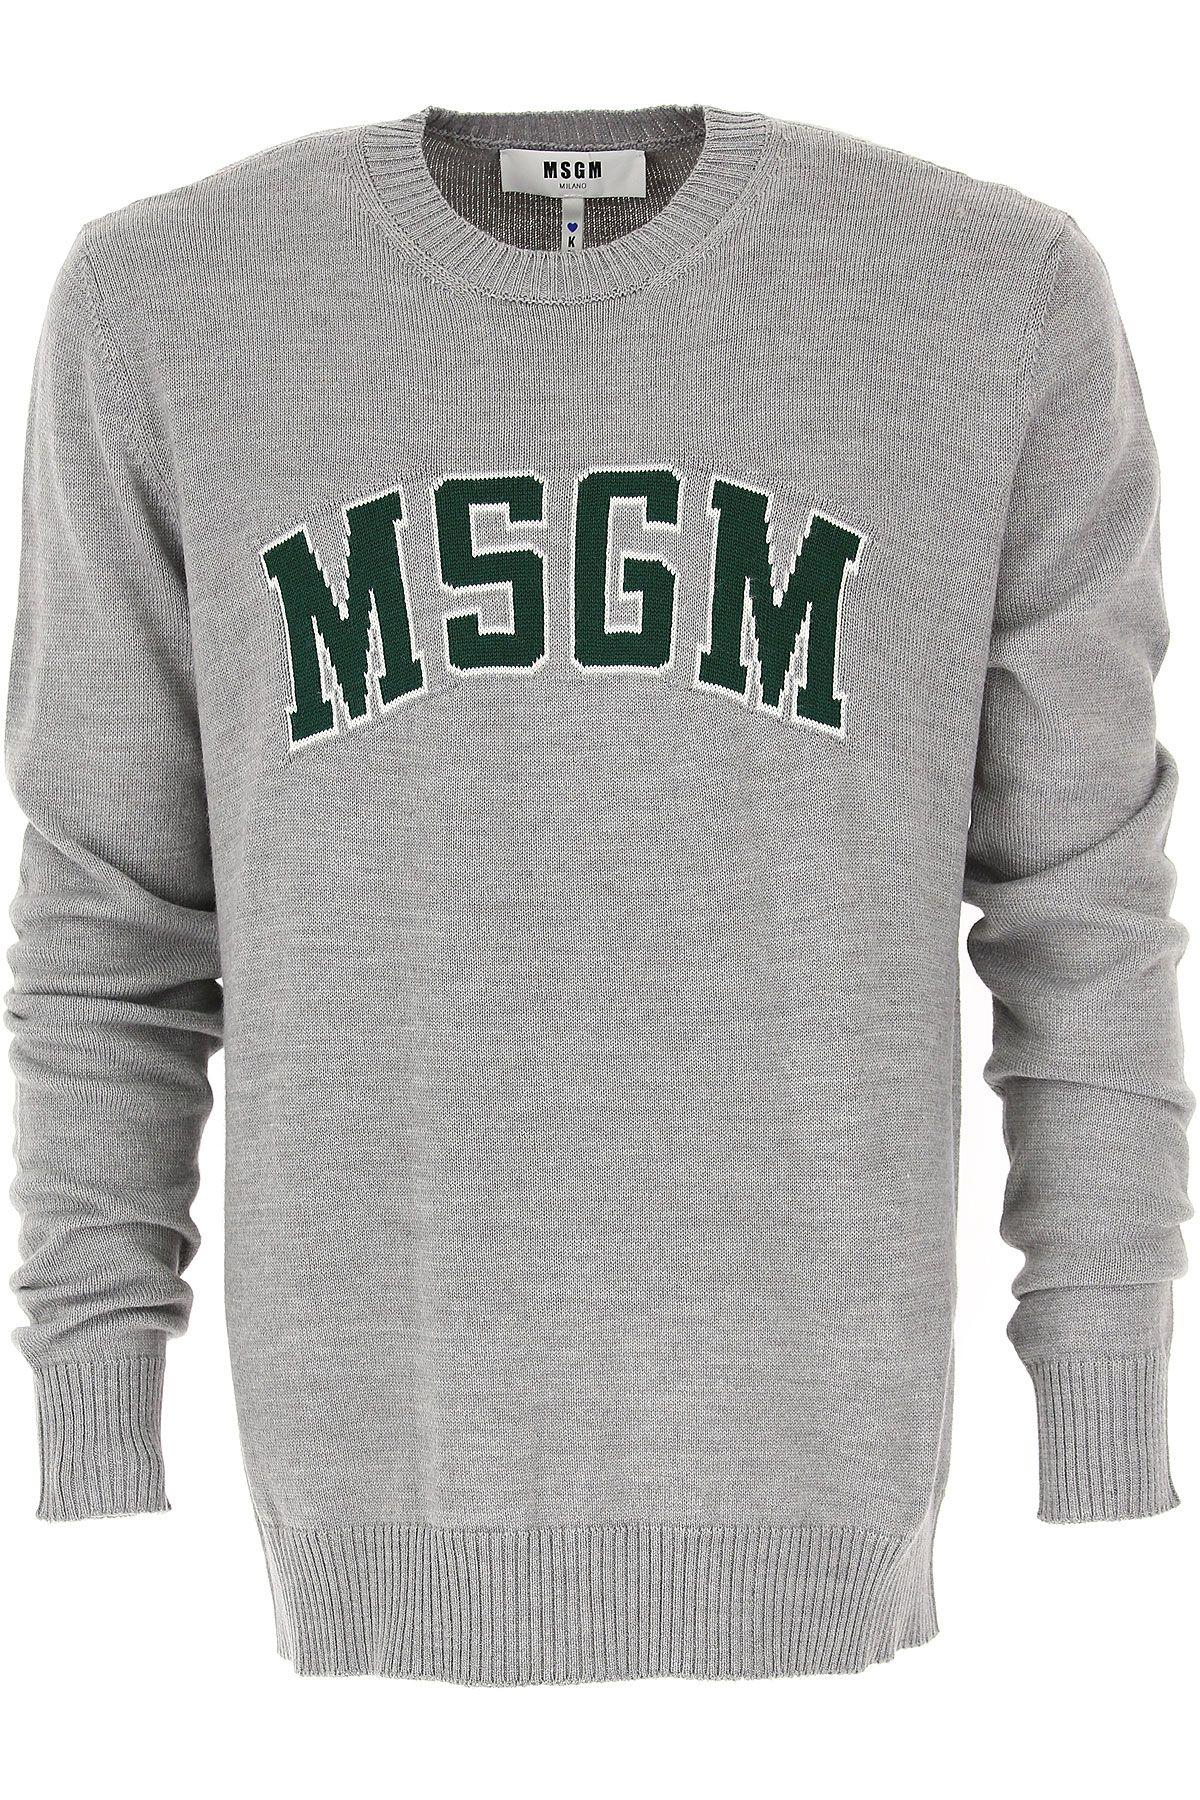 Light Grey Logo - MSGM Clothing For Men Fall 2018 19 Light Grey Logo On Chest